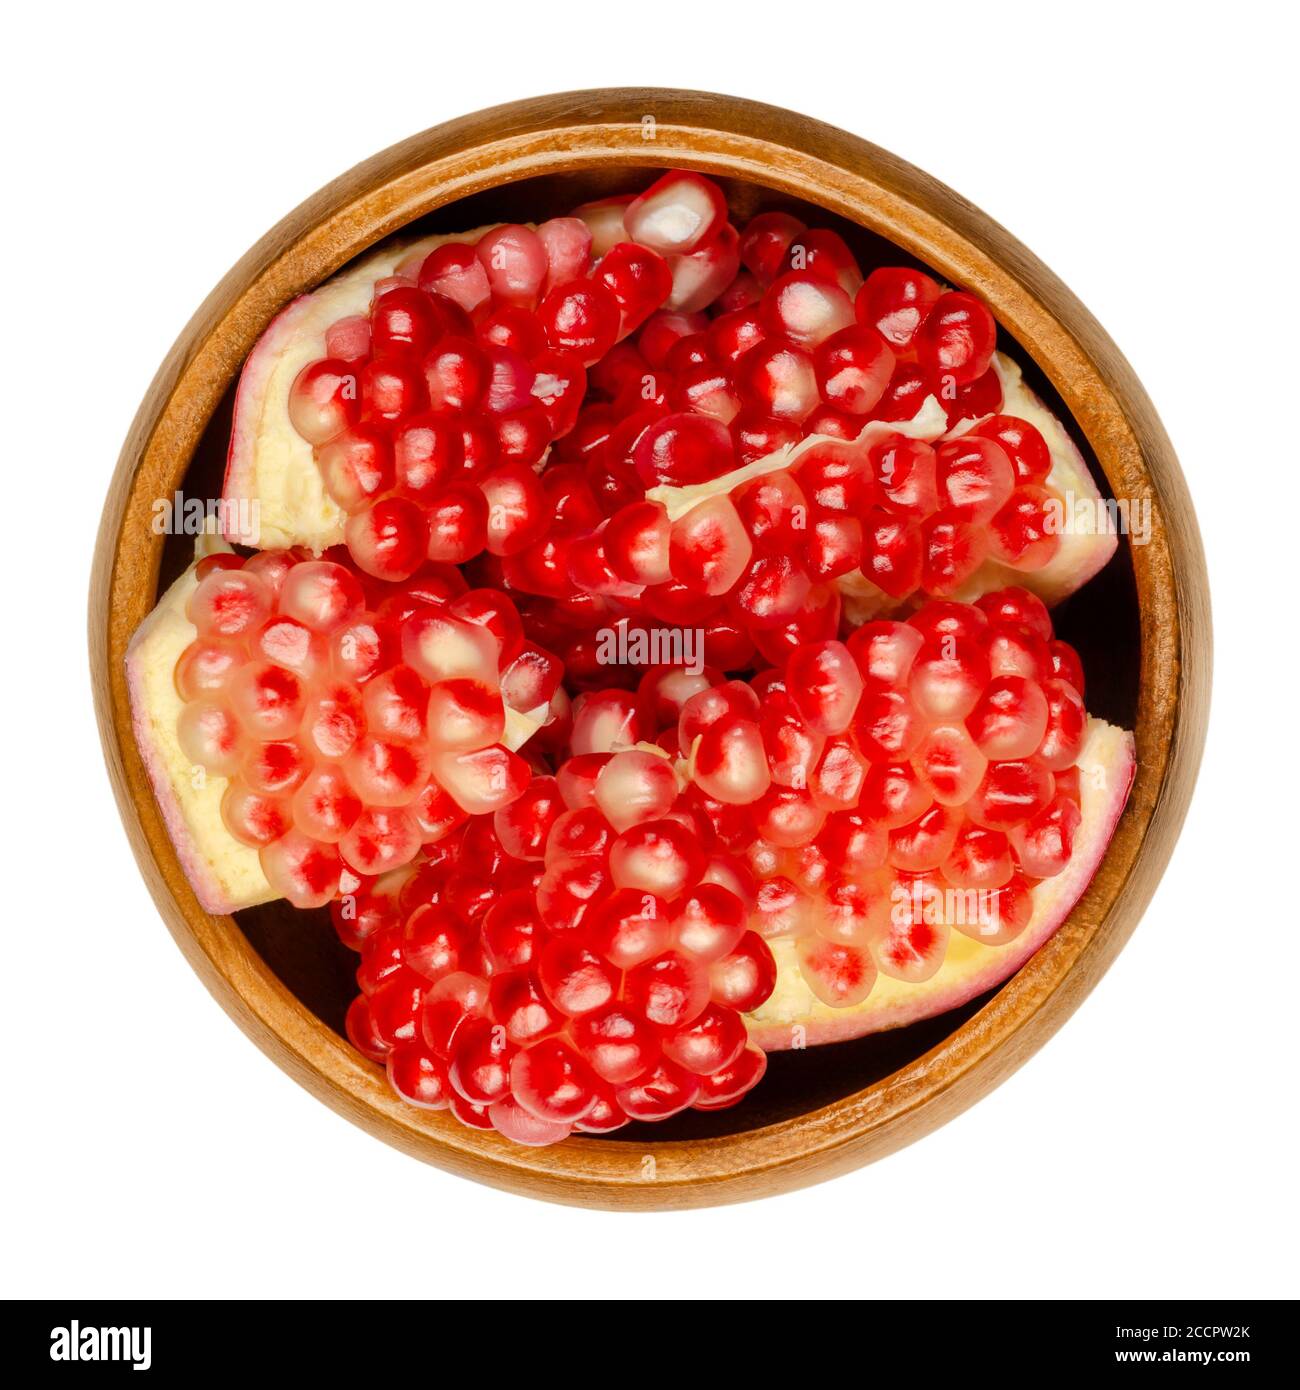 Grappoli di melograno in una ciotola di legno. Punica granatum. Frutta con grappoli di semi da rosso a viola. Può essere mangiato fresco, sjuiced, o usato per fare la grandine. Foto Stock